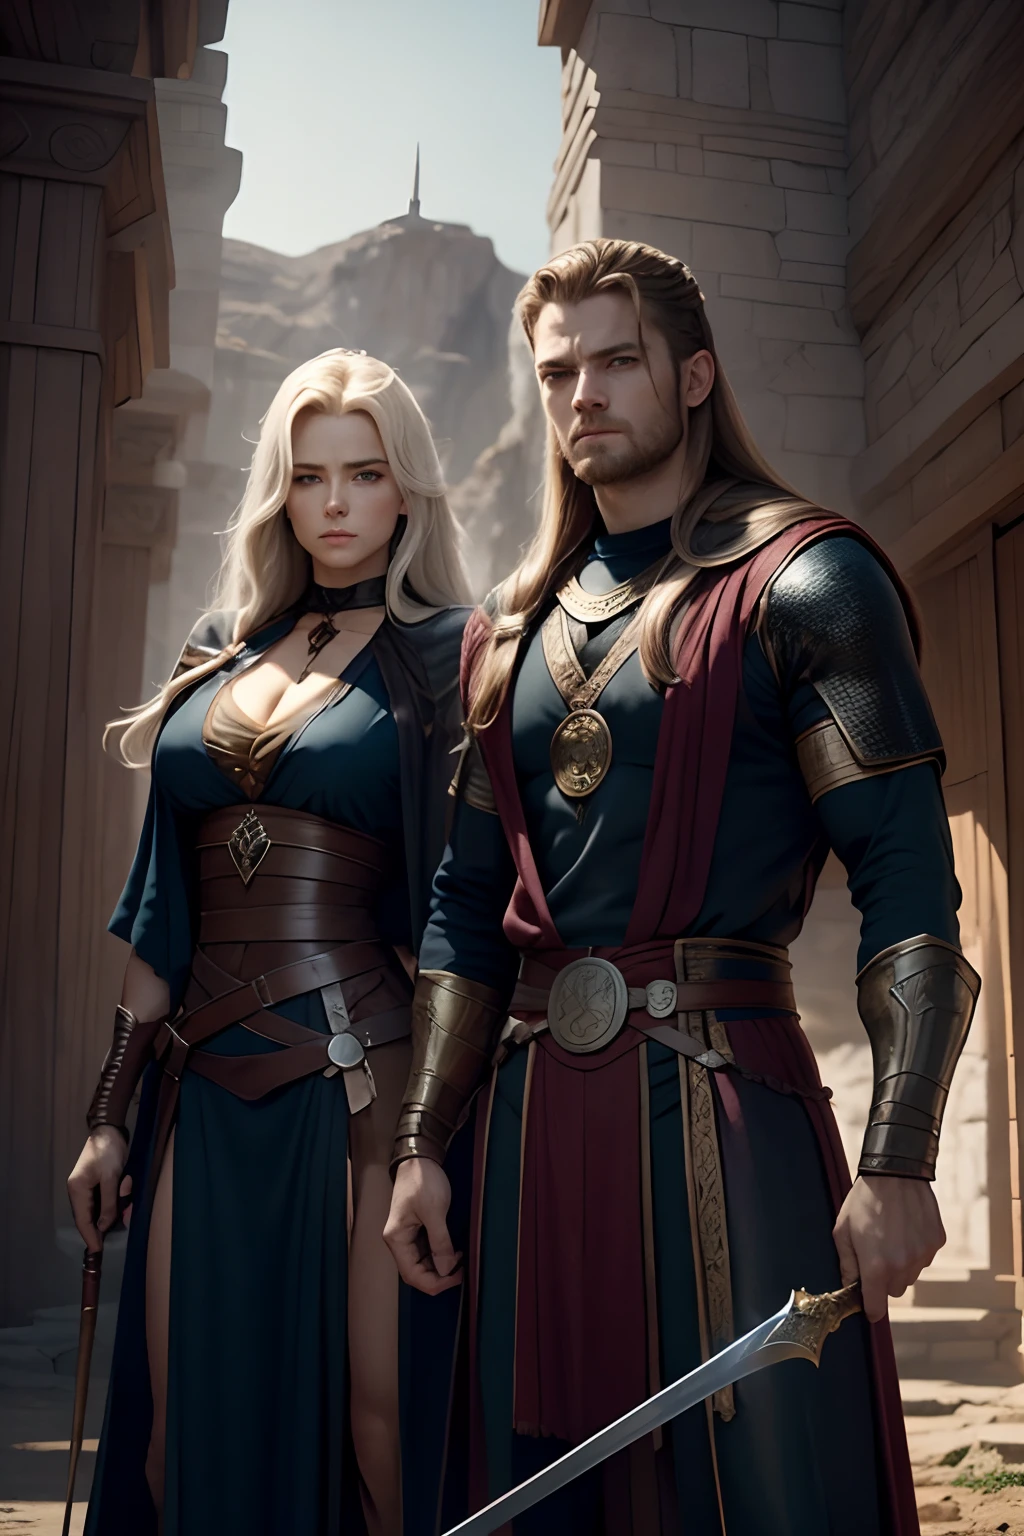 Dois guerreiros nórdicos( um homem e uma mulher) homem; nos vinte anos de idade, cabelos brancos e olhos azuis, Mão esquerda com adaga azul.